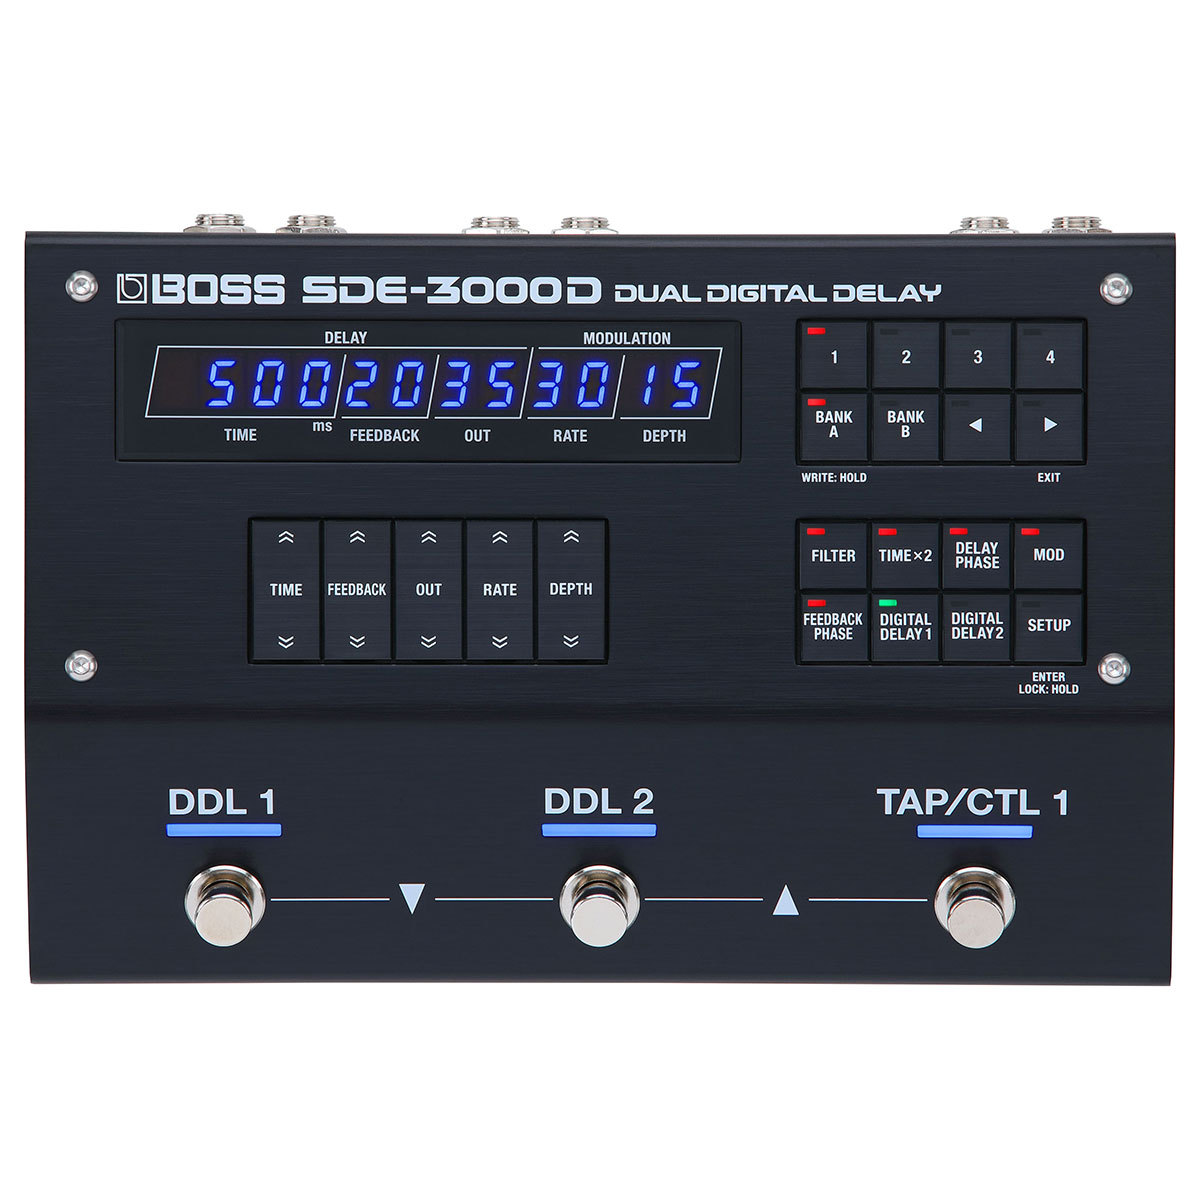 CONTENTSBOSS SDE-3000Dこの商品について技術者による安心のアフターフォローアドバイザーが楽器選びをサポート最新情報を手に入れよう音楽をもっと楽しみたい方は音楽教室がおススメ♪お問い合わせBOSS SDE-3000D 名機SDE-3000を忠実に再現したデジタルディレイの決定版 ご […]